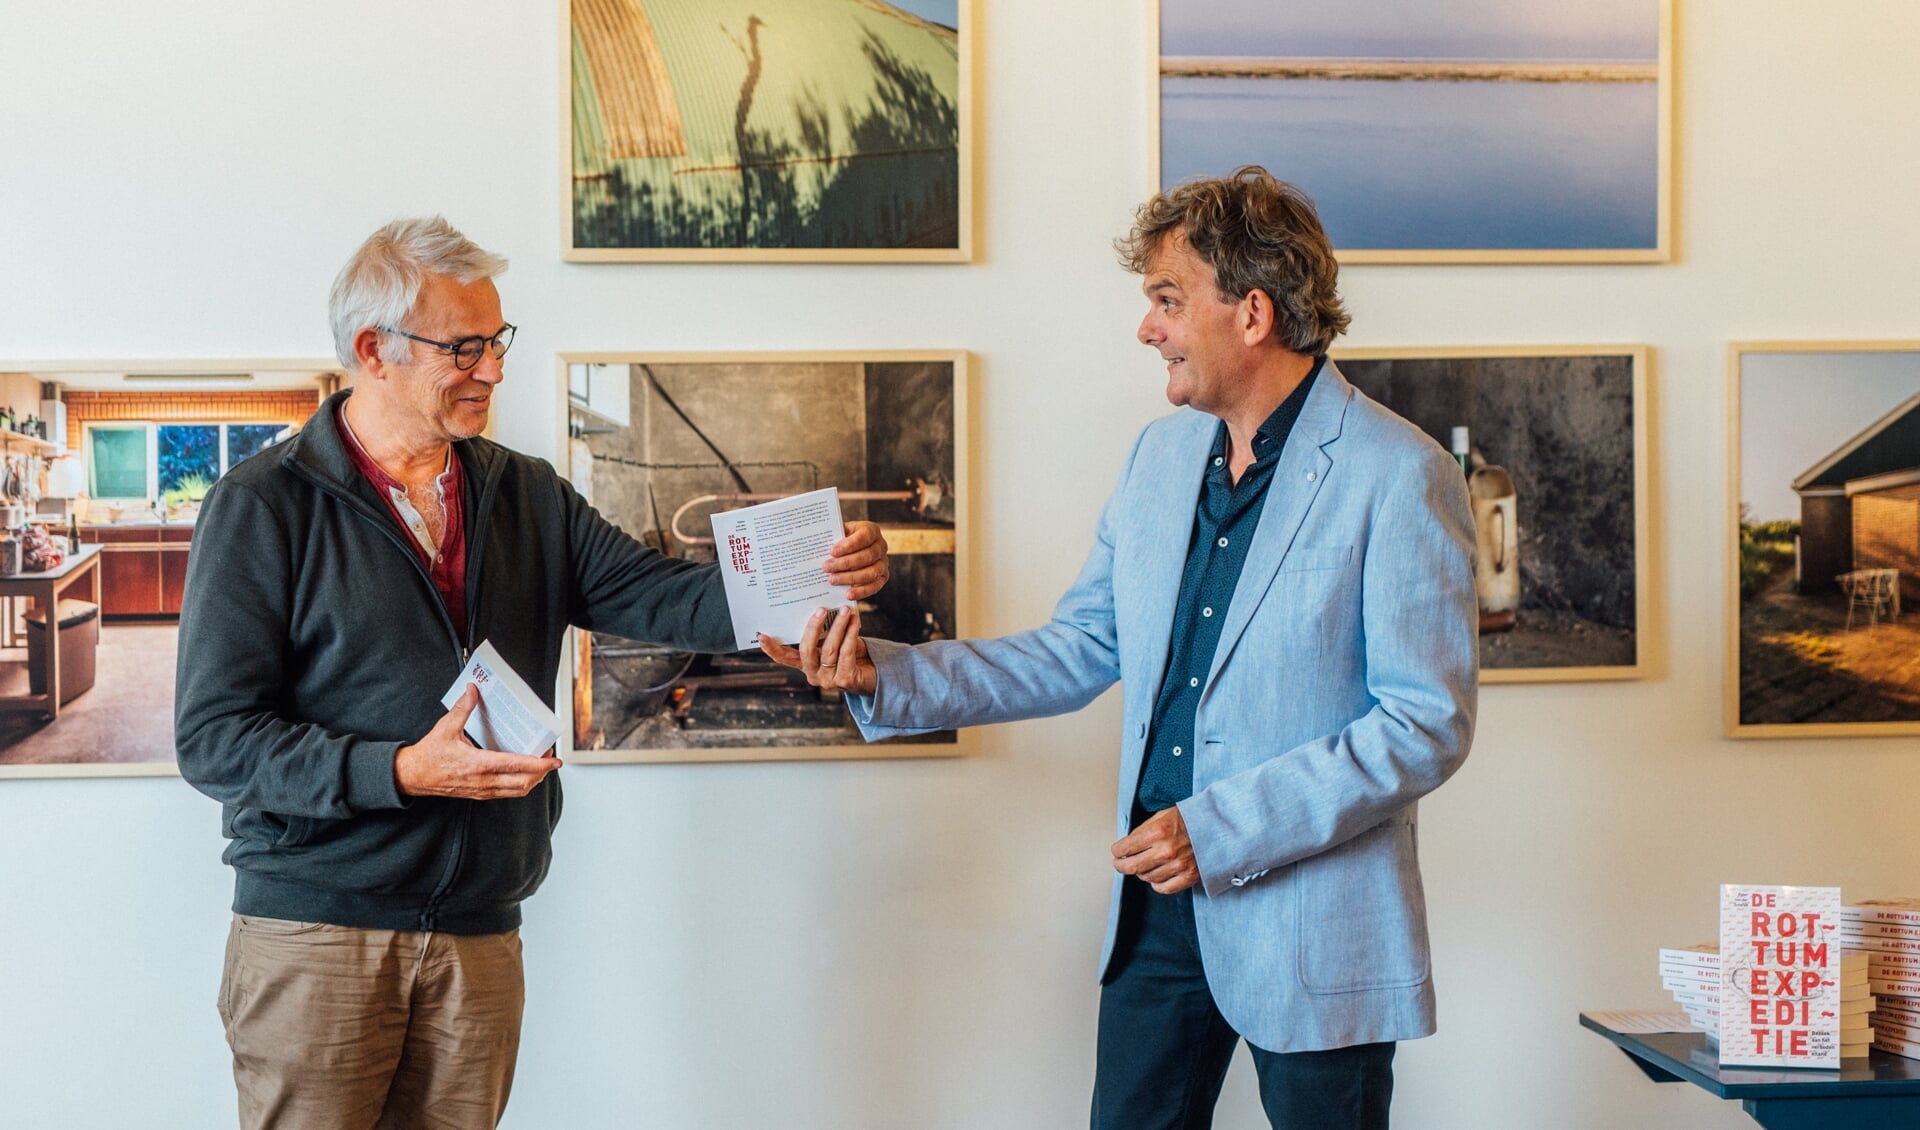 Auteur Peter van der Schelde (rechts) overhandigt het boek De Rottum Expeditie aan bestuurssecretaris Erik de Graaf van Stichting Vrienden van Rottumeroog en Rottumerplaat.